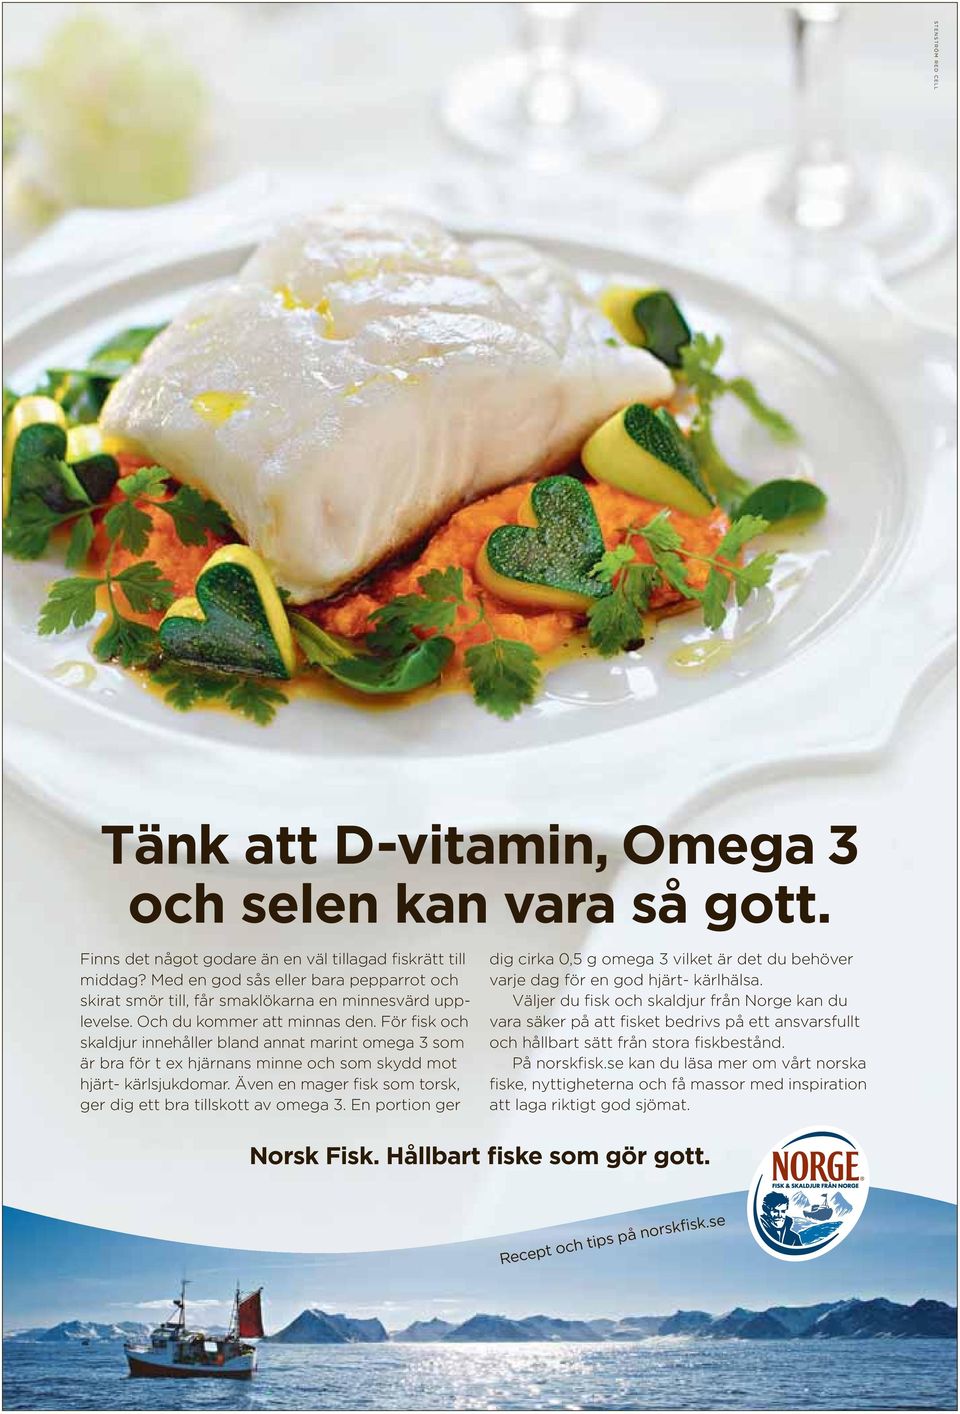 För fisk och skaldjur innehåller bland annat marint omega 3 som är bra för t ex hjärnans minne och som skydd mot hjärt- kärlsjukdomar.